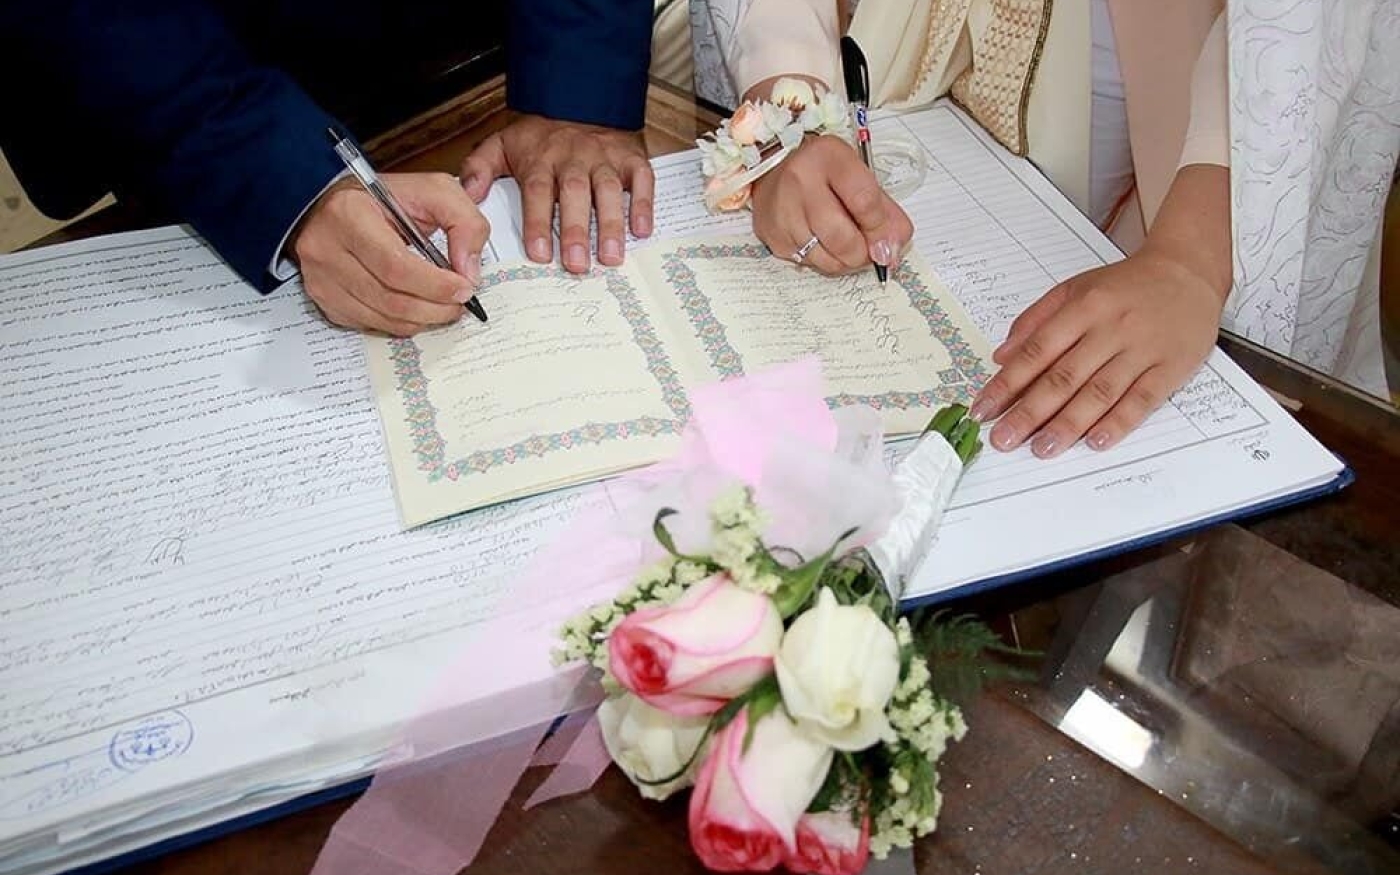 Les couples s’entendent sur les aspects financiers et les futurs arrangements familiaux avant de se marier (Creative Commons)